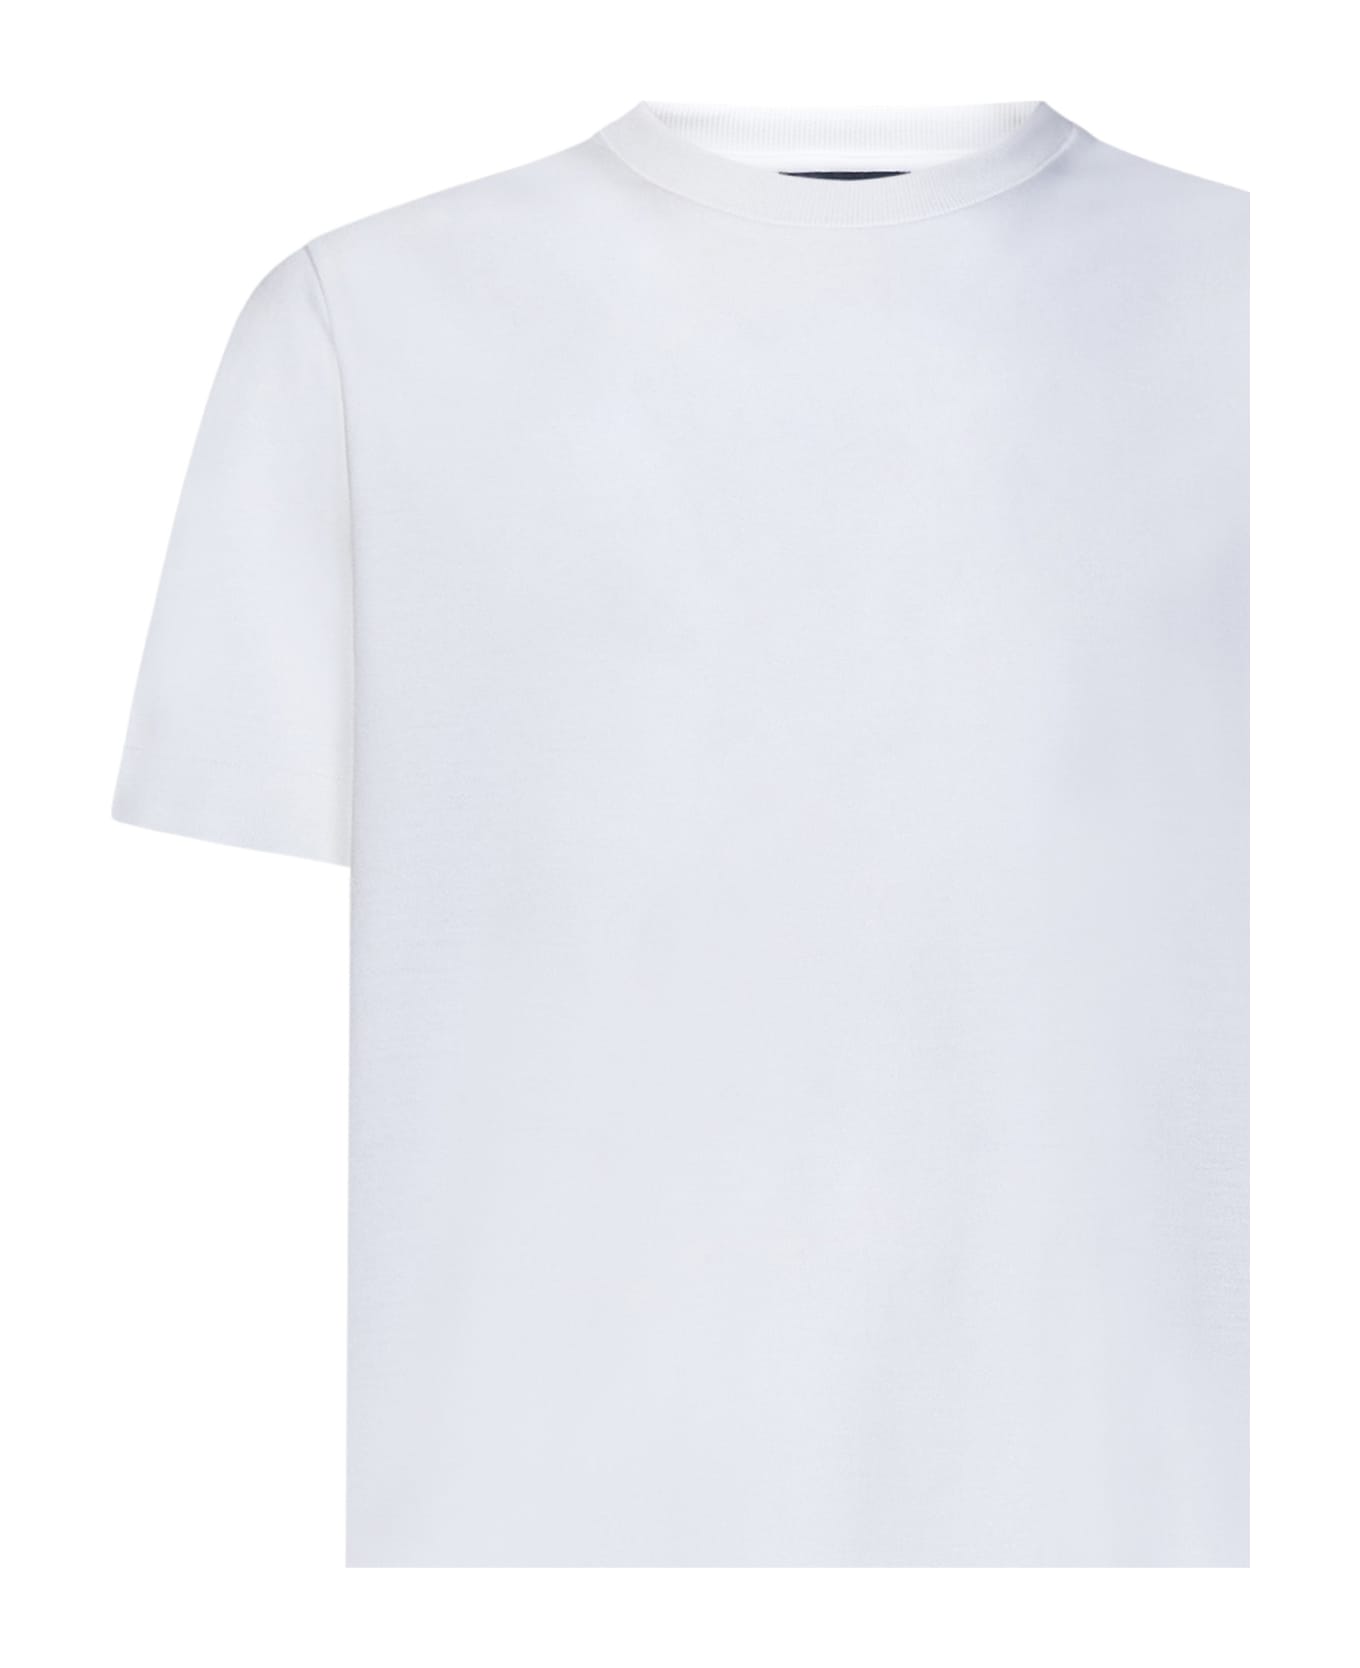 Herno T-shirt - White